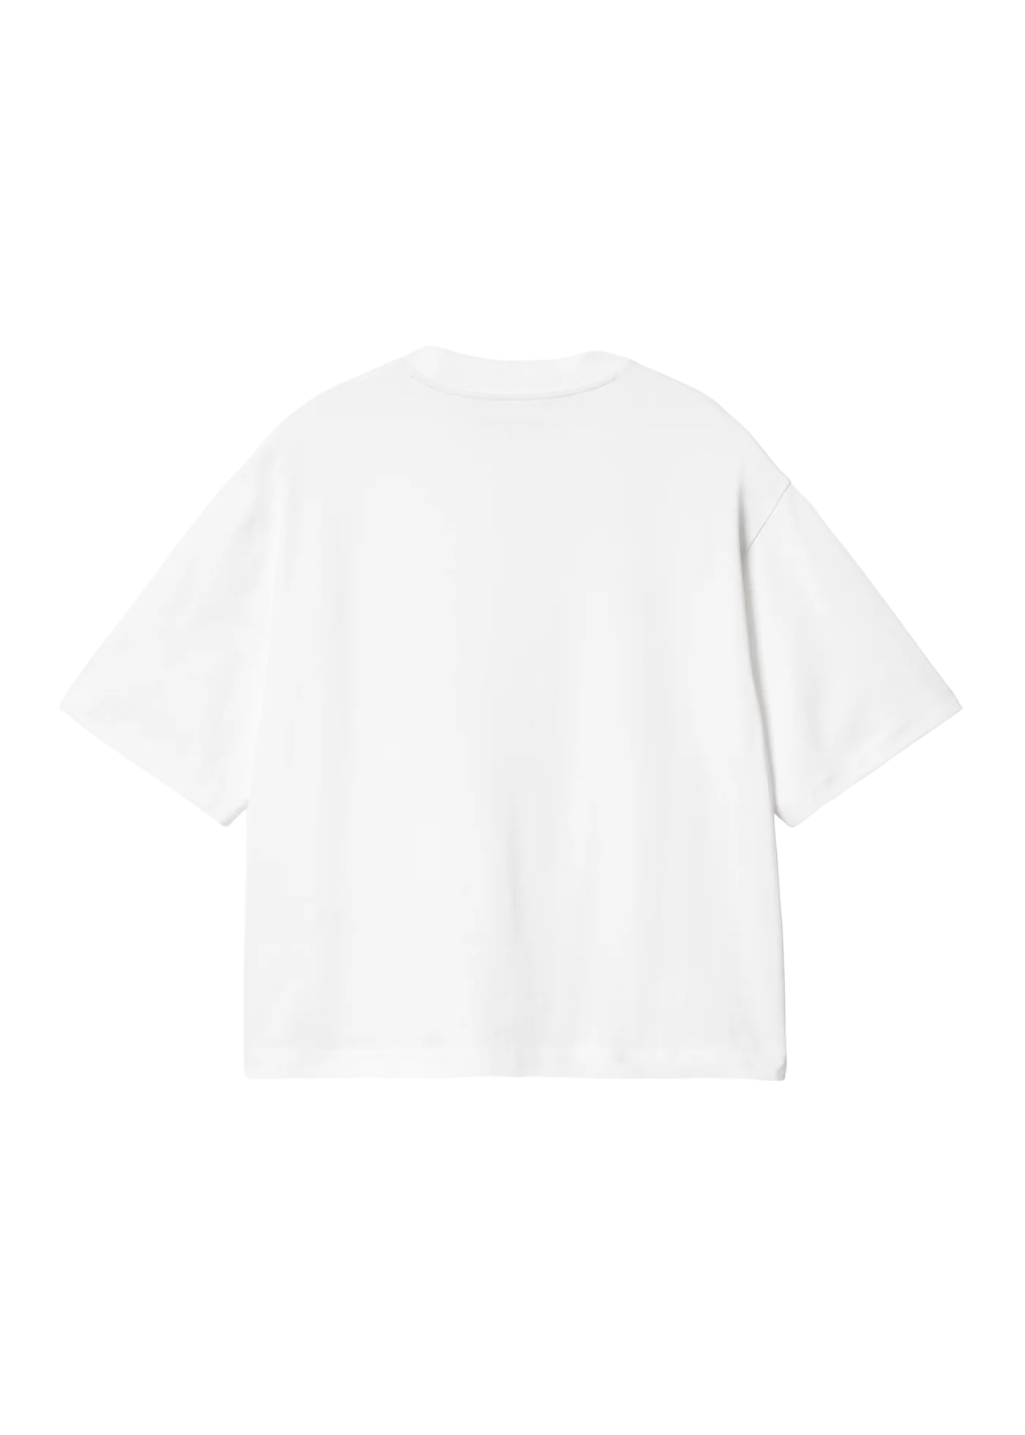 Carhartt WIP - W' S/S Kainosho T-Shirt - White/Charm Pink